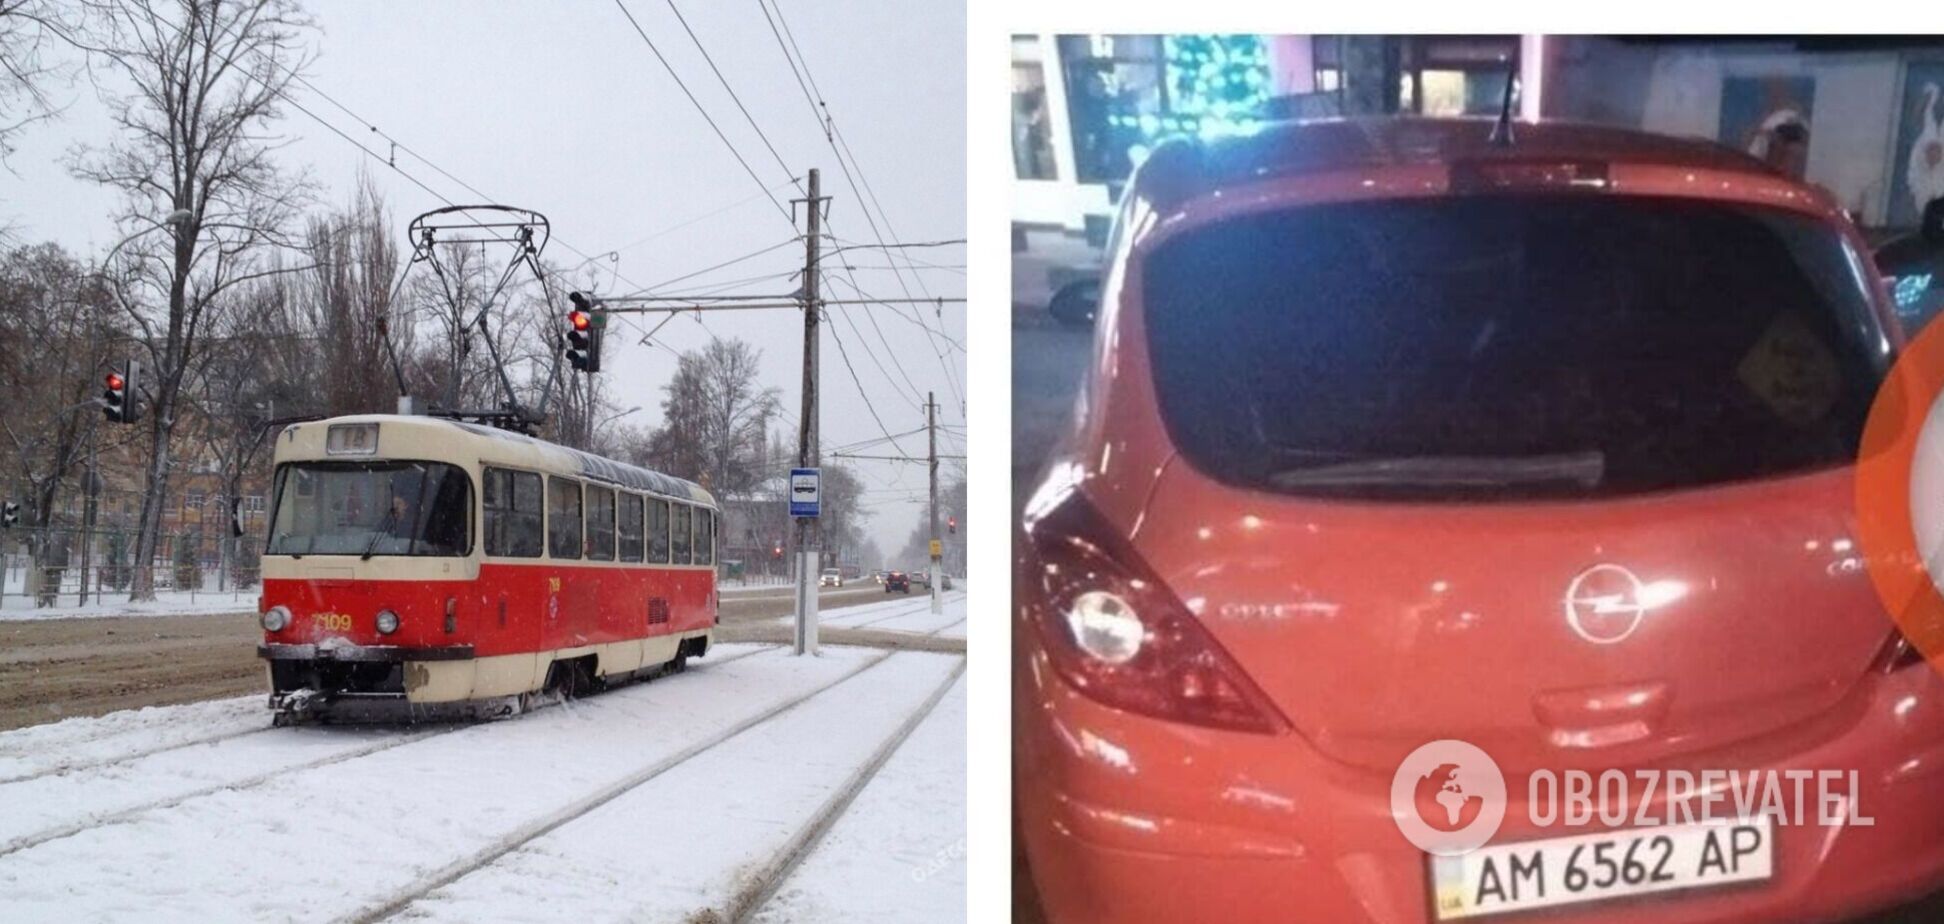 Автомобиль Opel перекрыл движение трамвая в Киеве